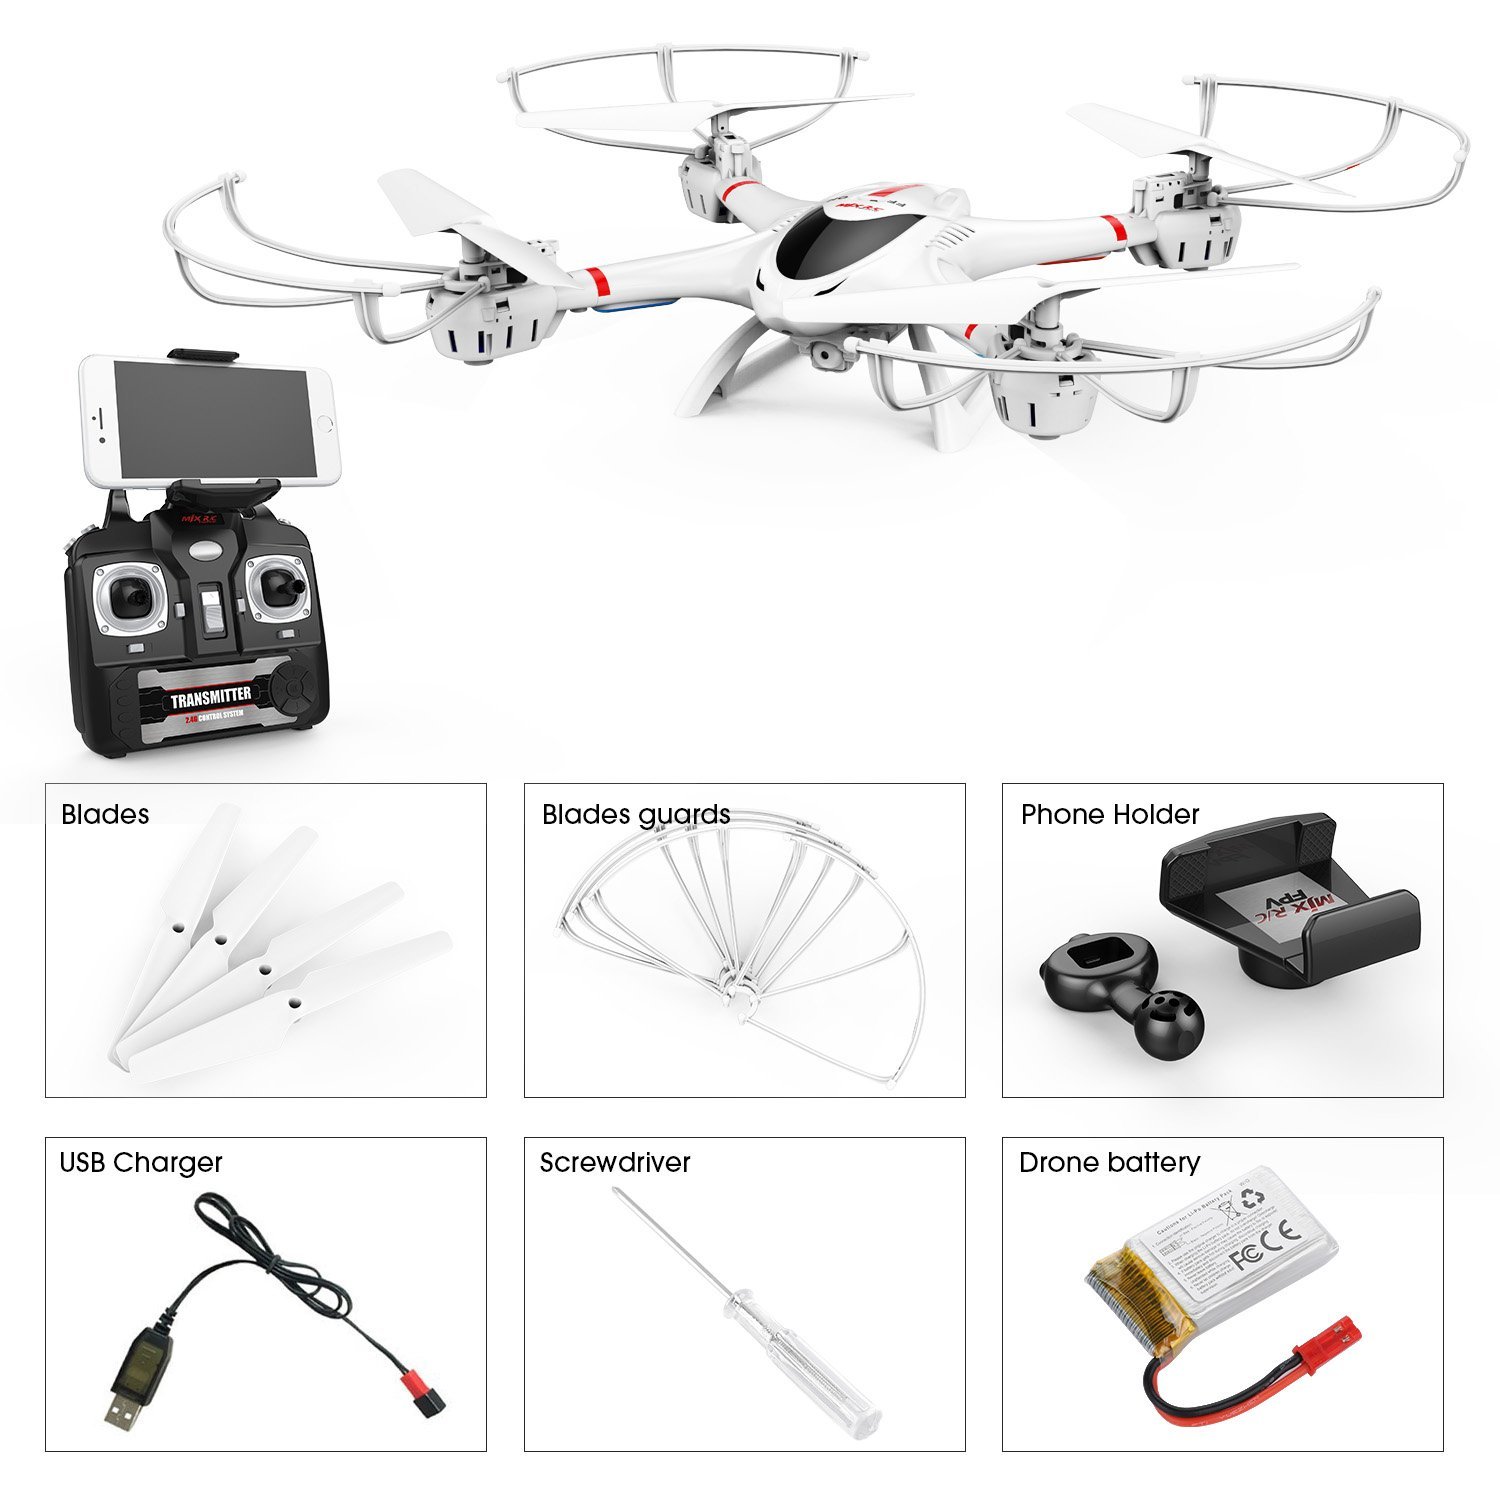 dbpower mjx x400w fpv drone review